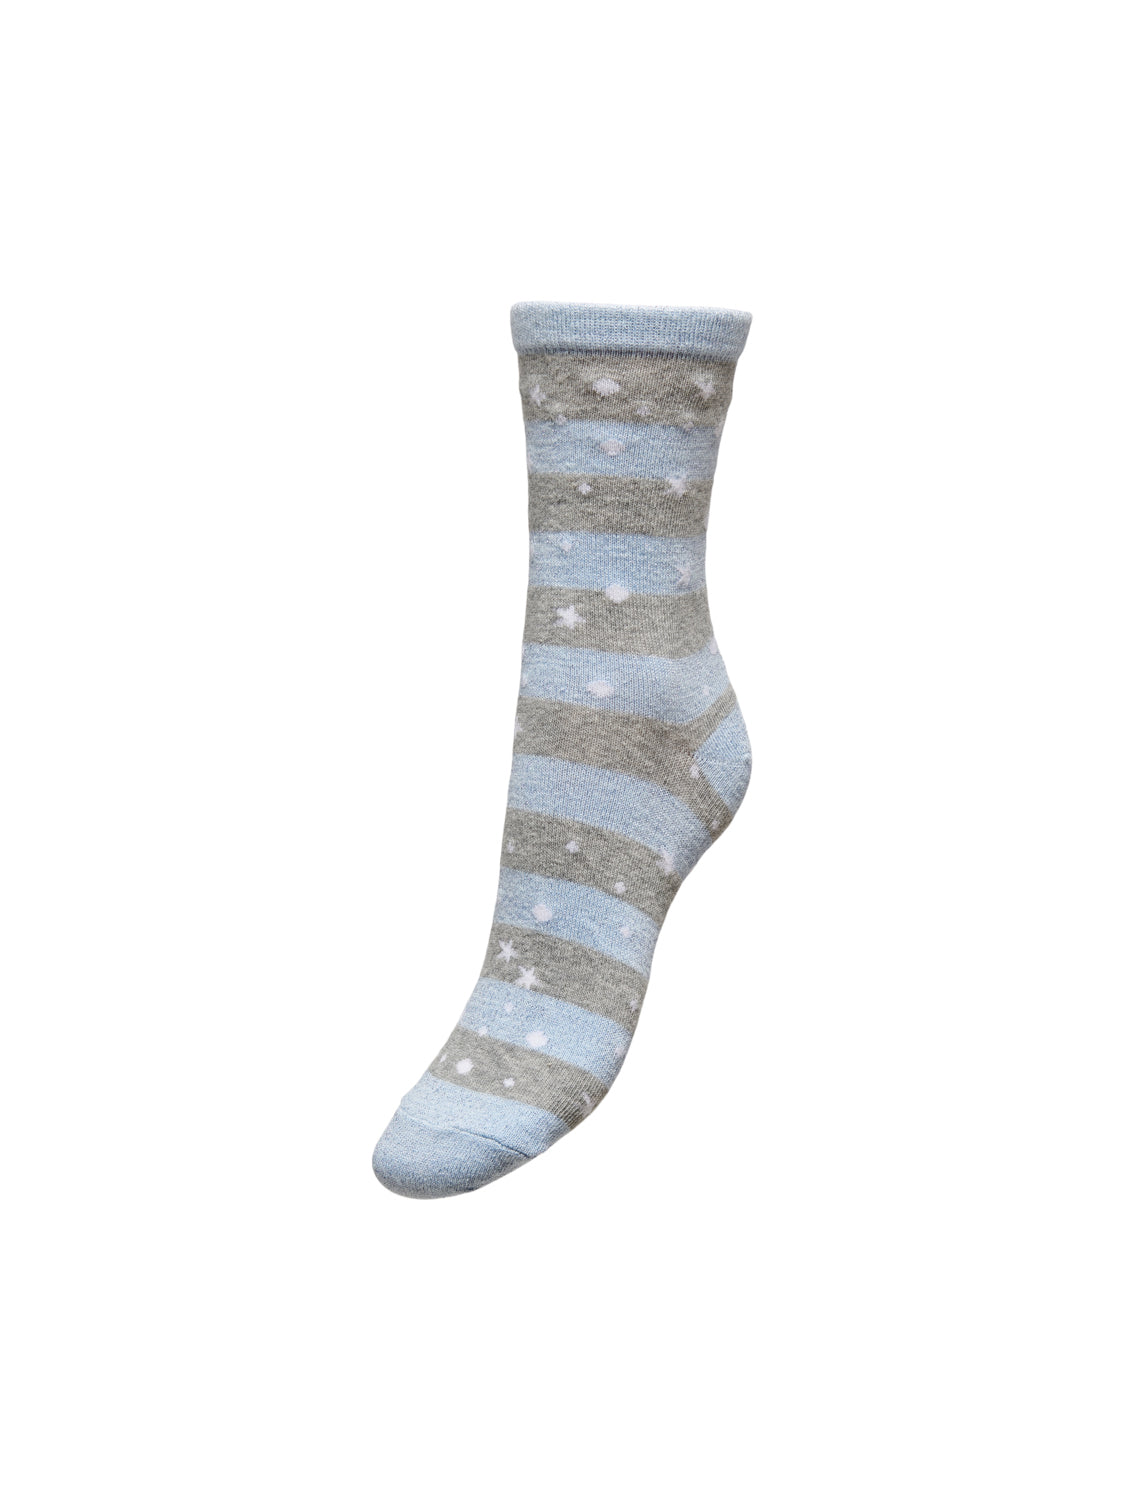 PGSUN Socks - Light Grey Melange